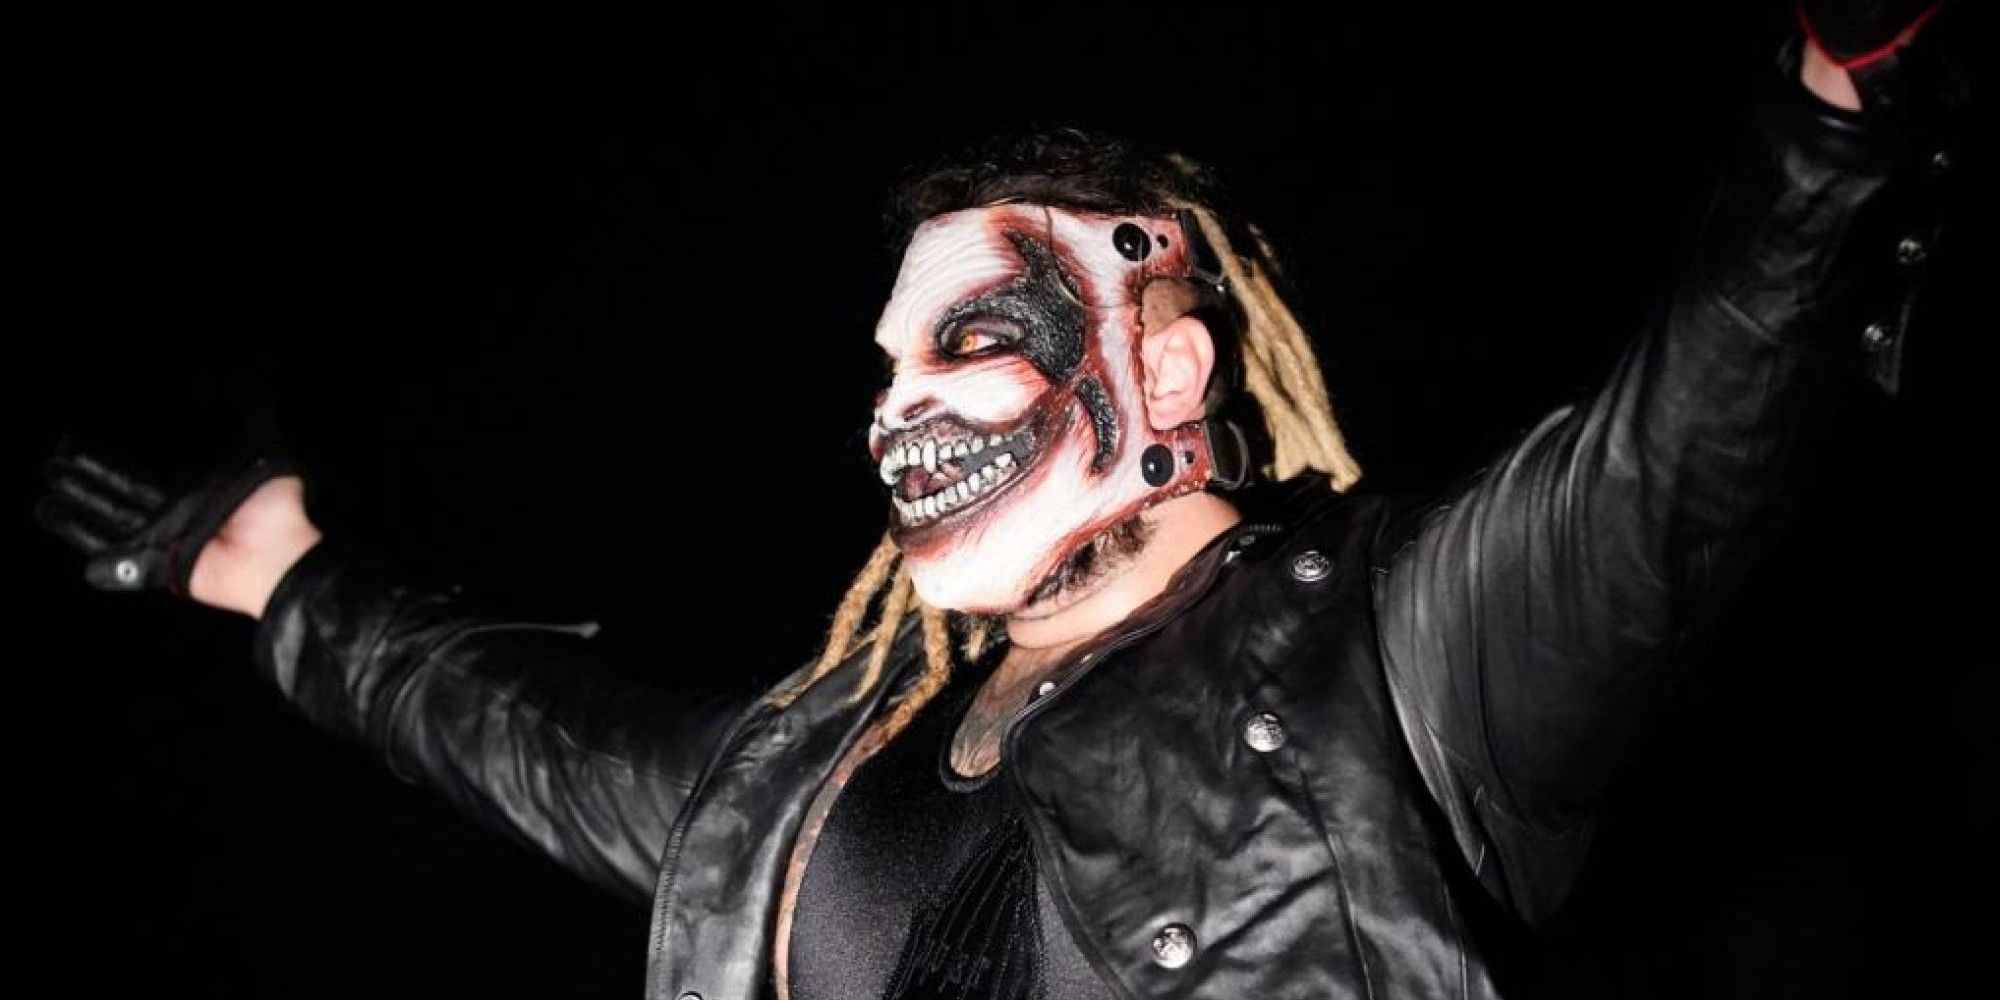 Bray Wyatt the Fiend in WWE